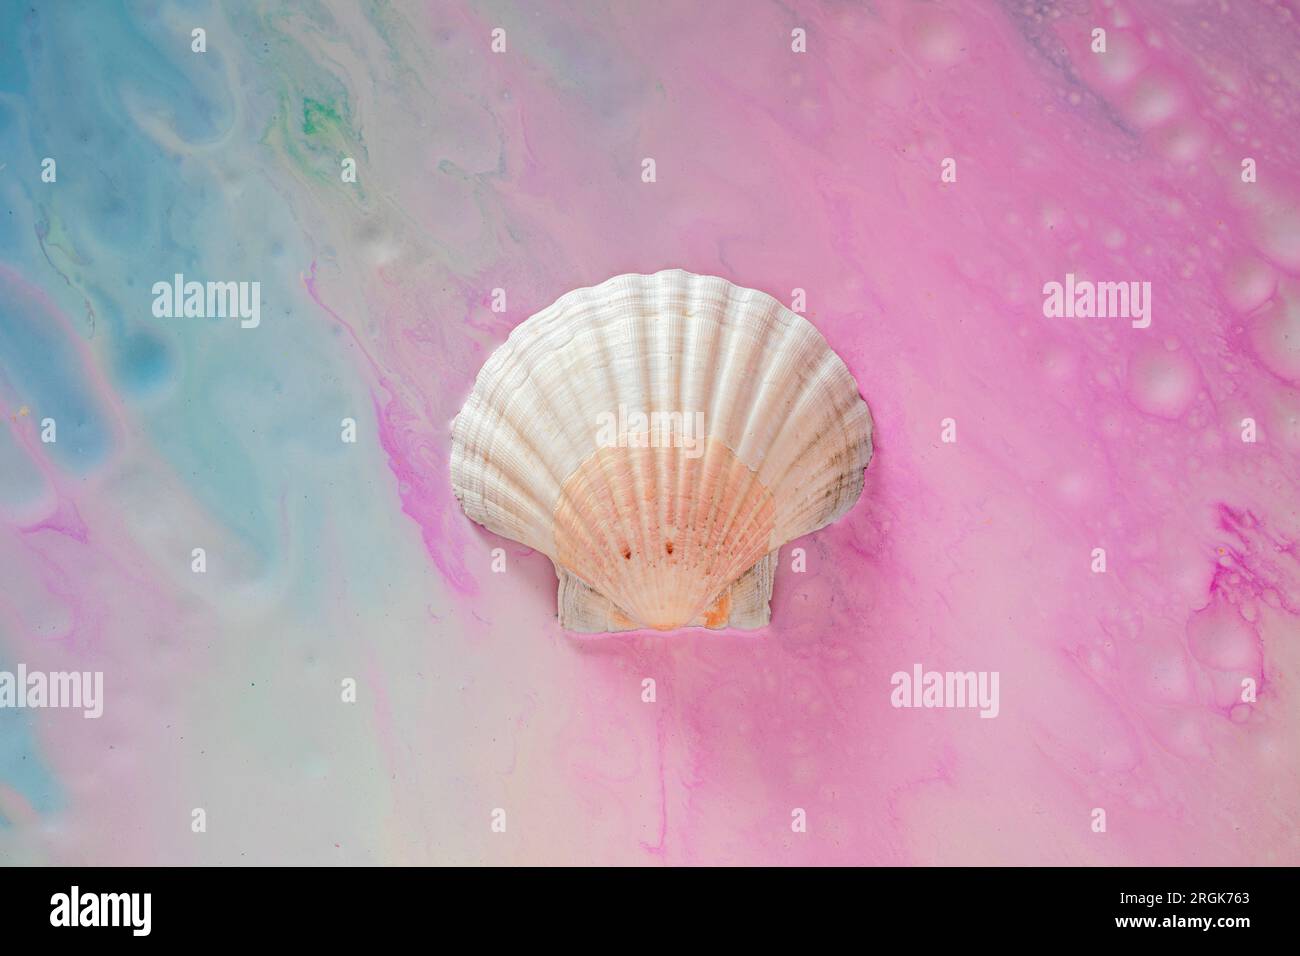 Große weiße Muschel auf farbenfrohem blau-pinkfarbenen Hintergrund Stockfoto